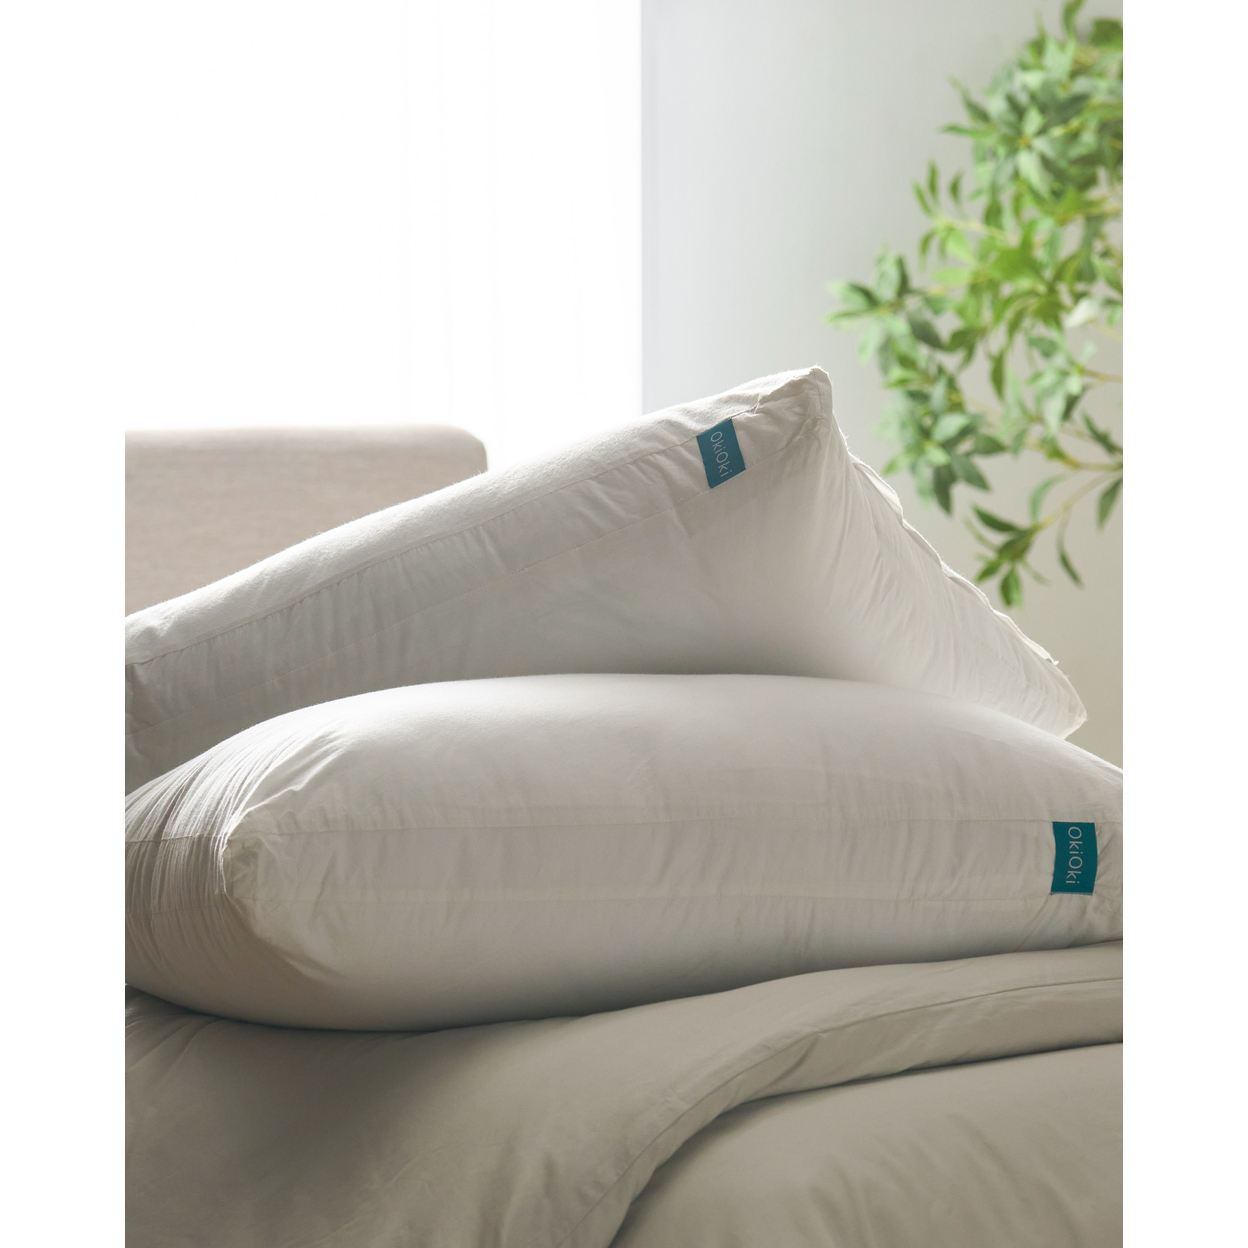 OkiOki Cotton Pillow, White - King